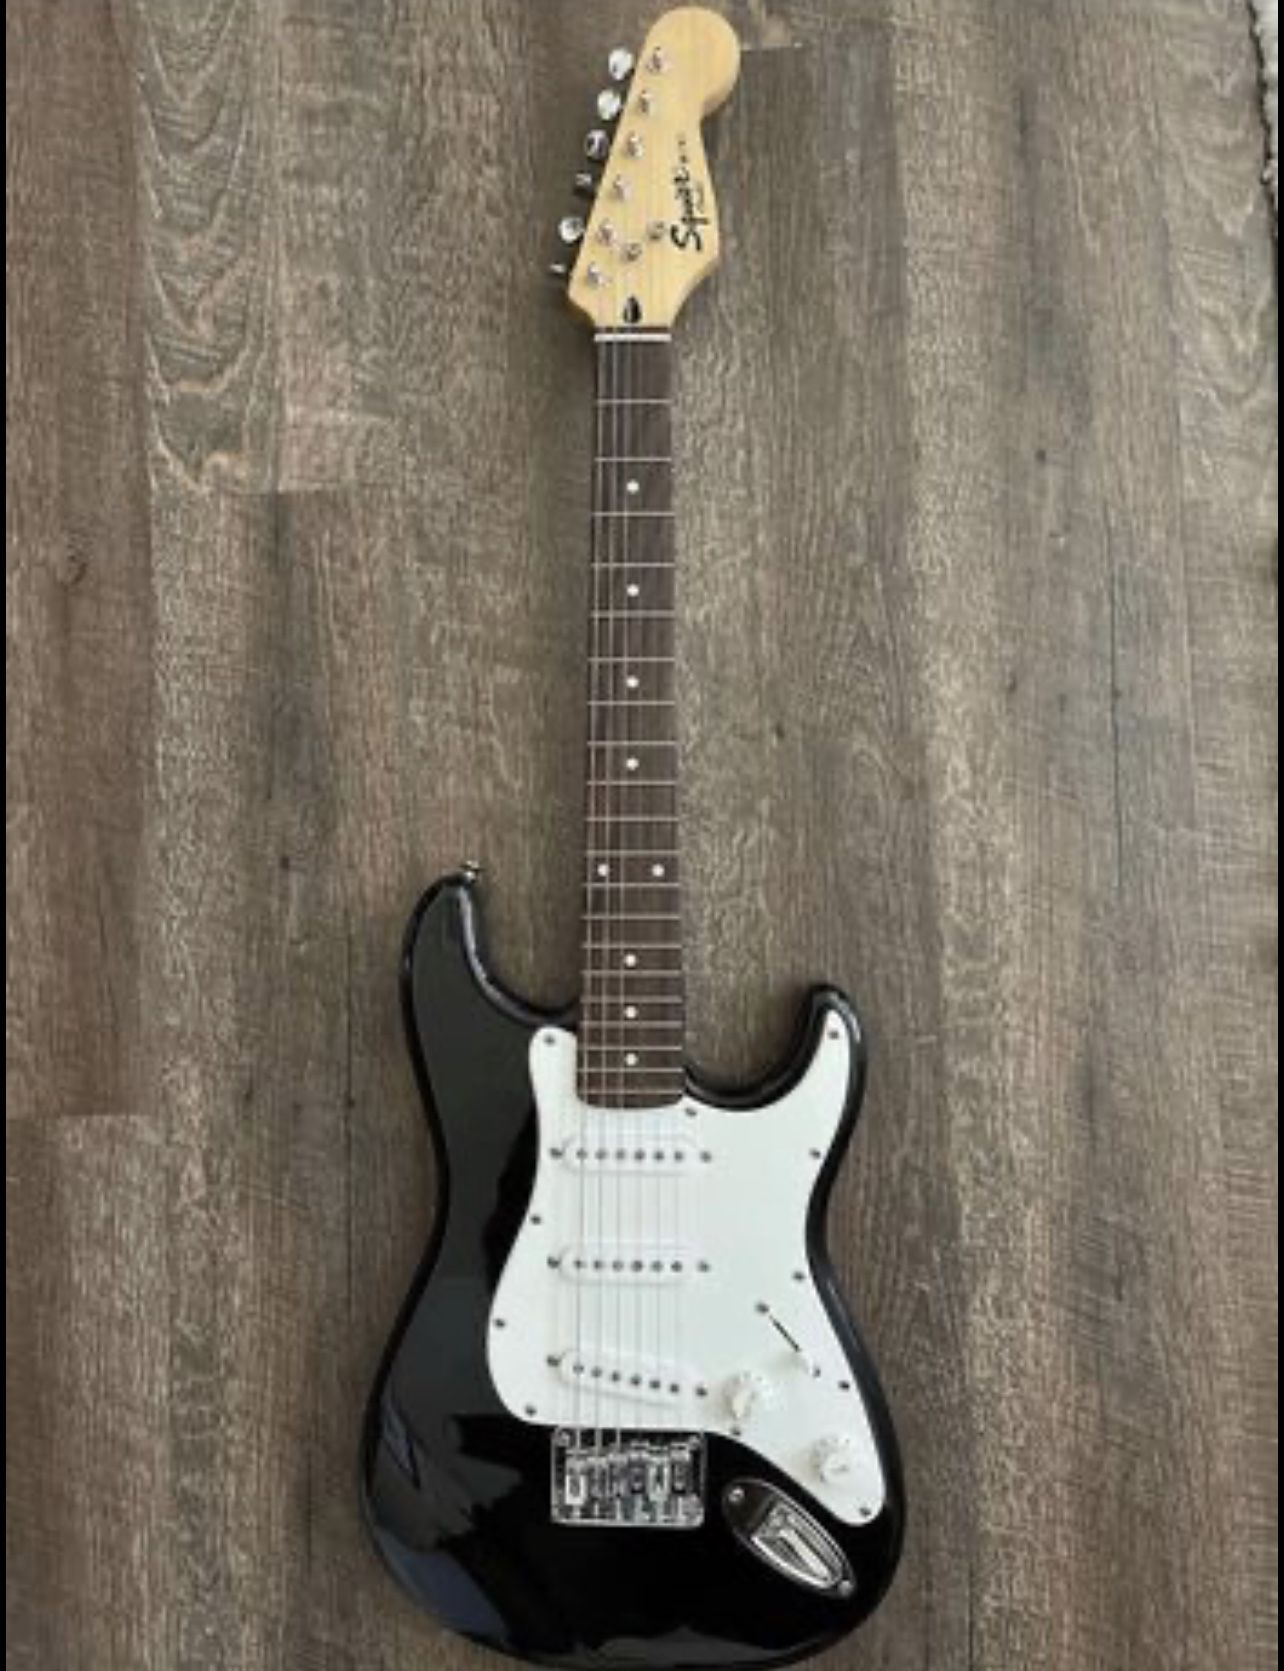 Squier-Fender Mini Stratocaster V2